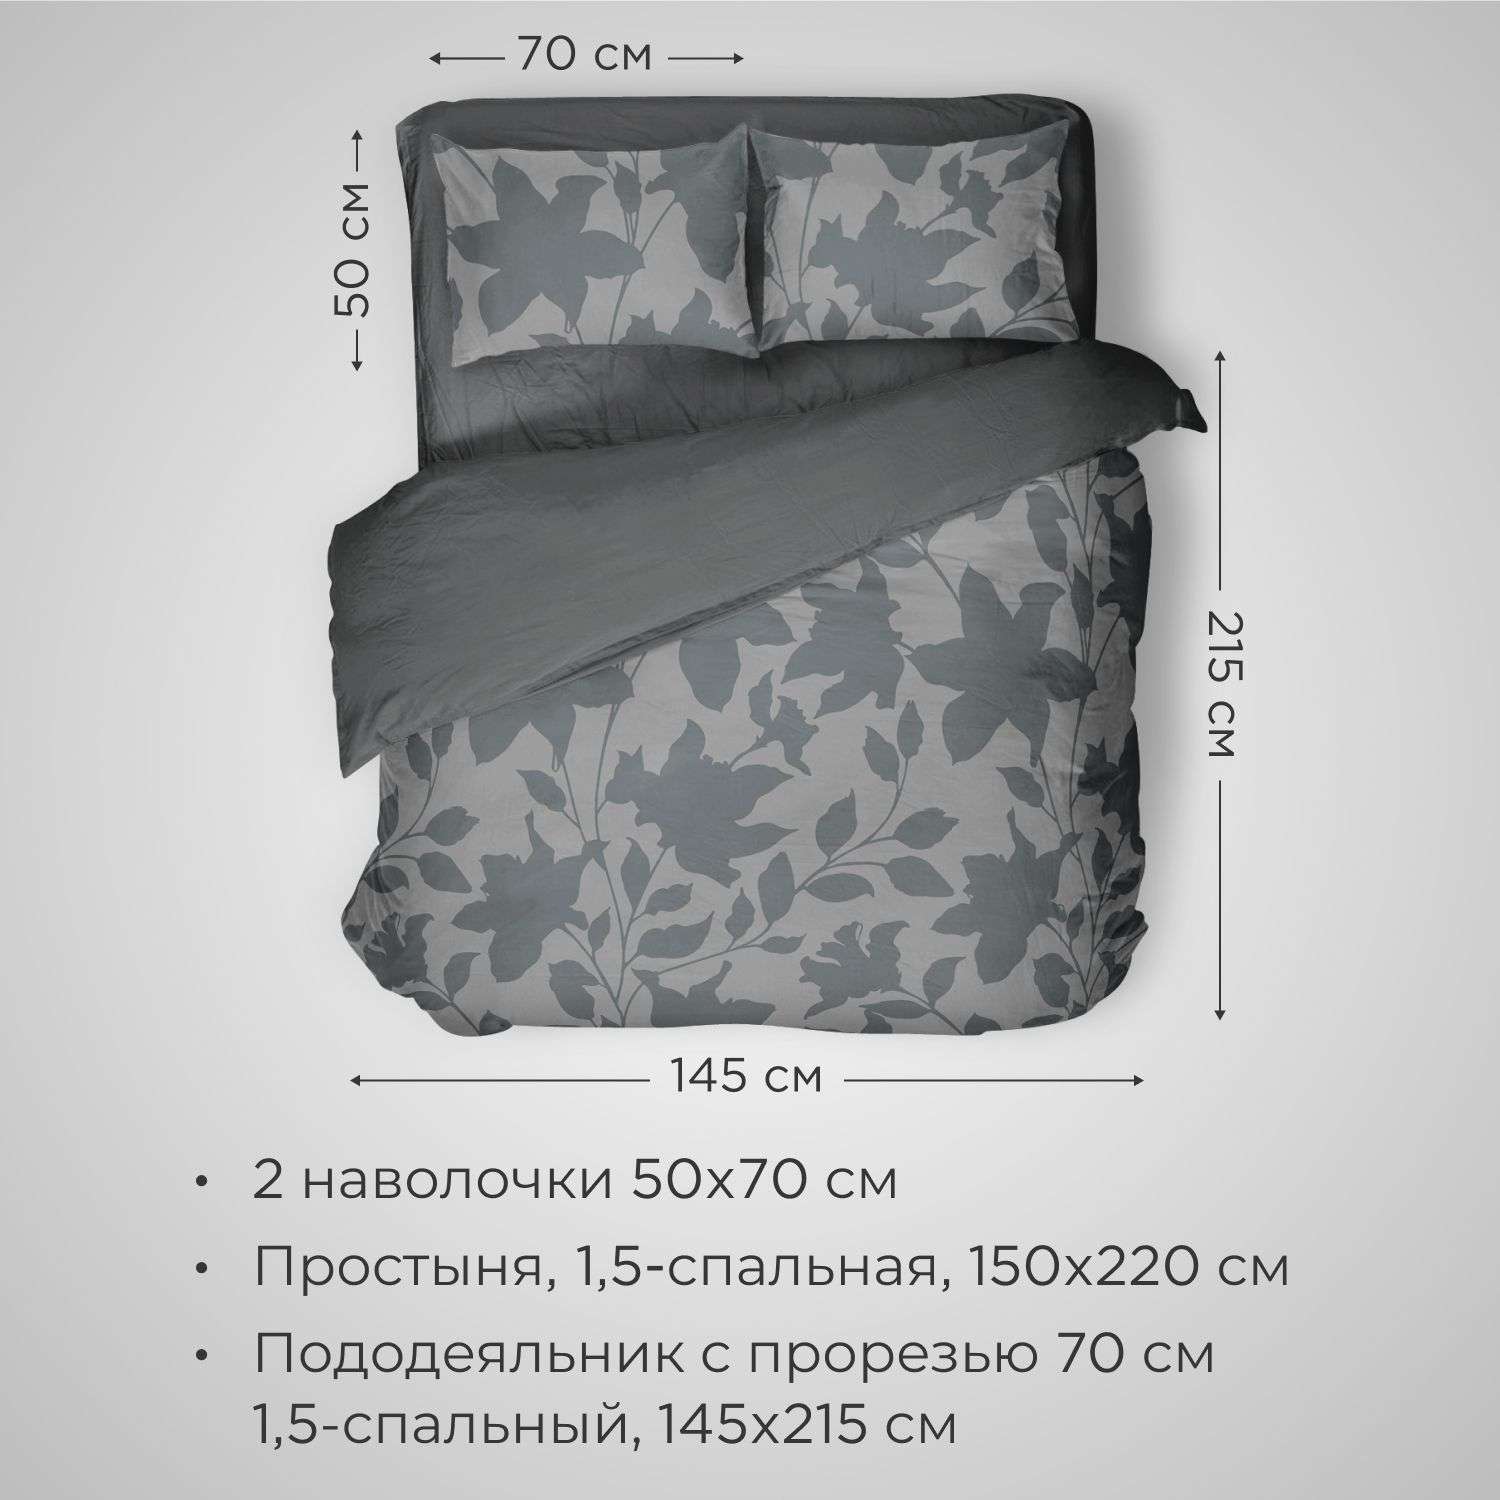 Комплект постельного белья SONNO URBAN FLOWERS 1.5-спальныйцвет Цветы матовый графит - фото 2